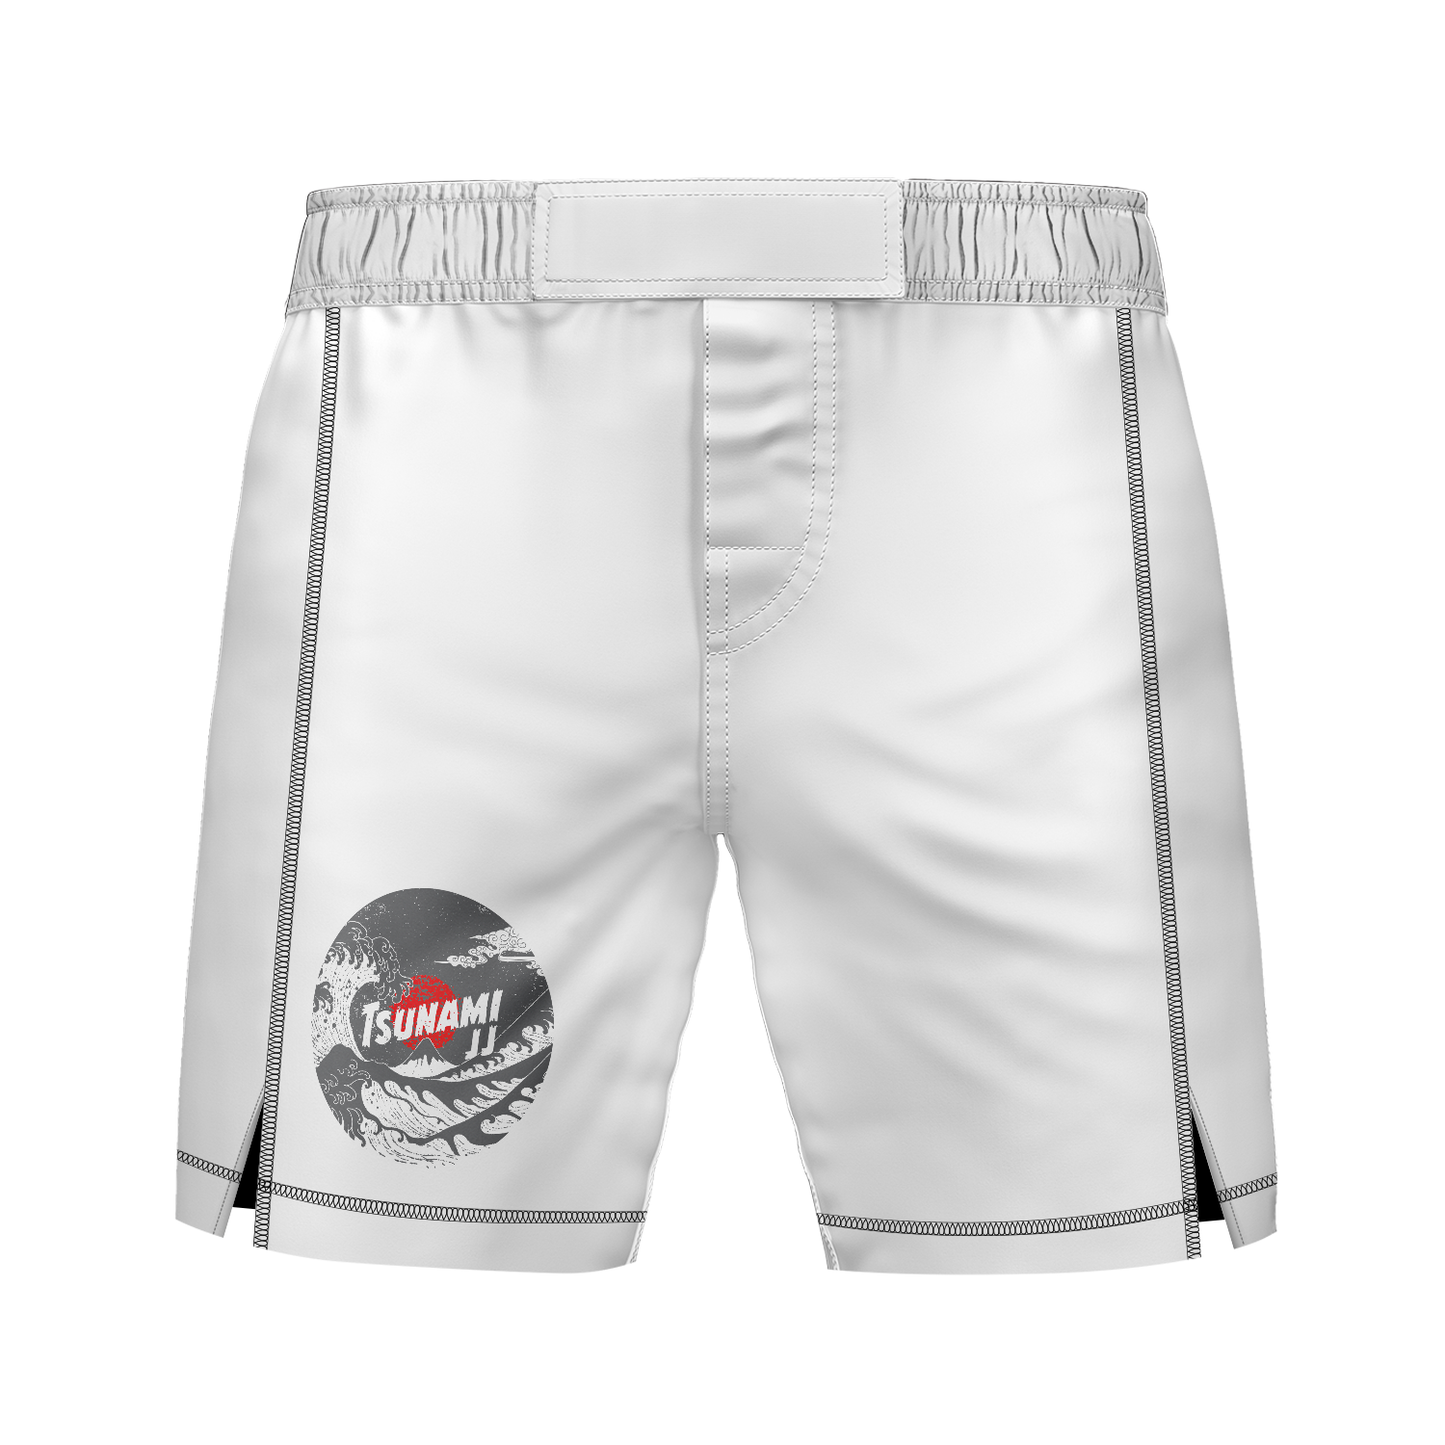 Tsunami JJ men's 7" fight shorts Ranked, white